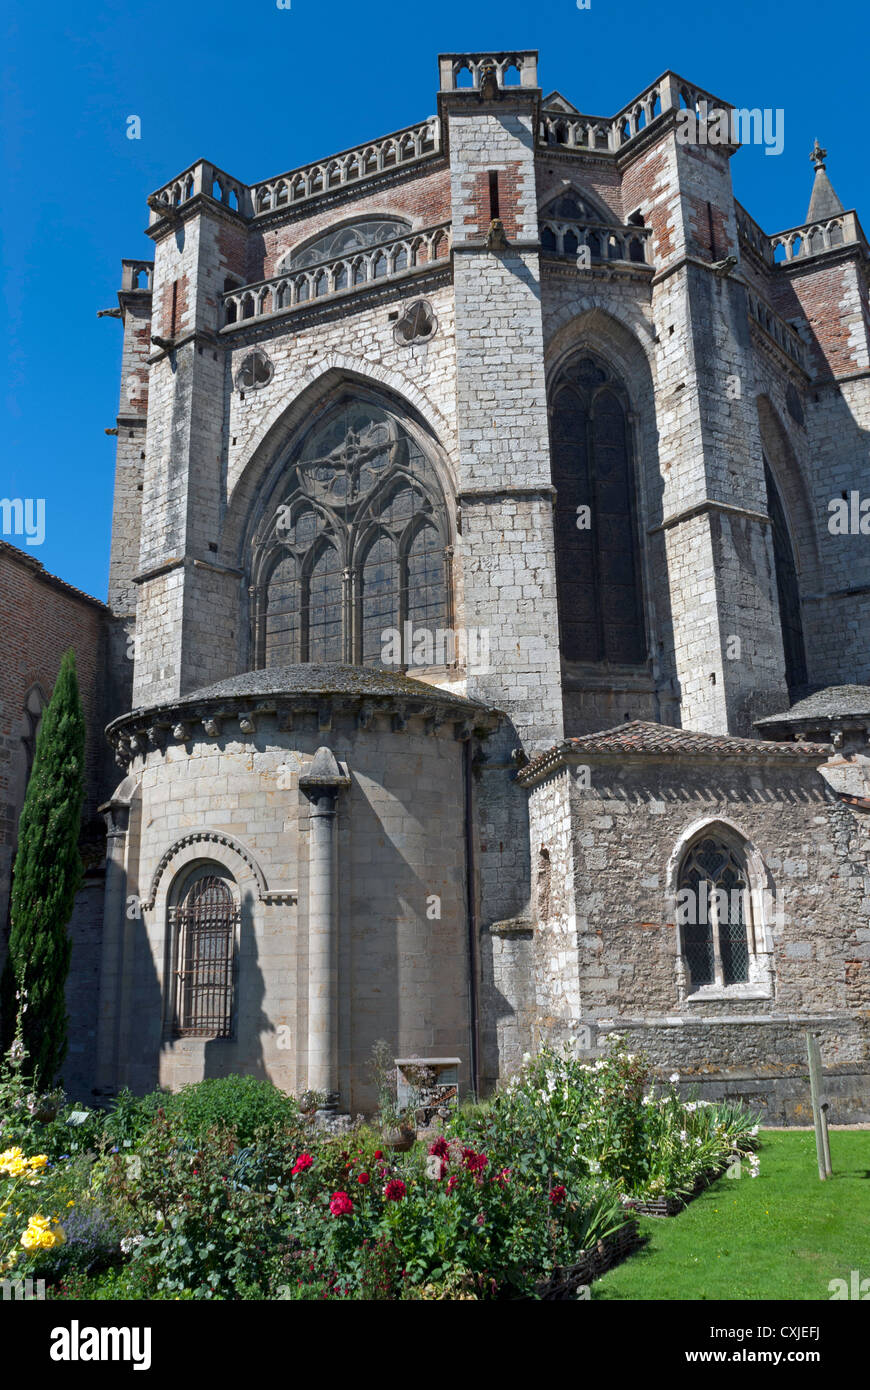 Vue arrière de la cathédrale de Saint Etienne à Cahors, France Banque D'Images